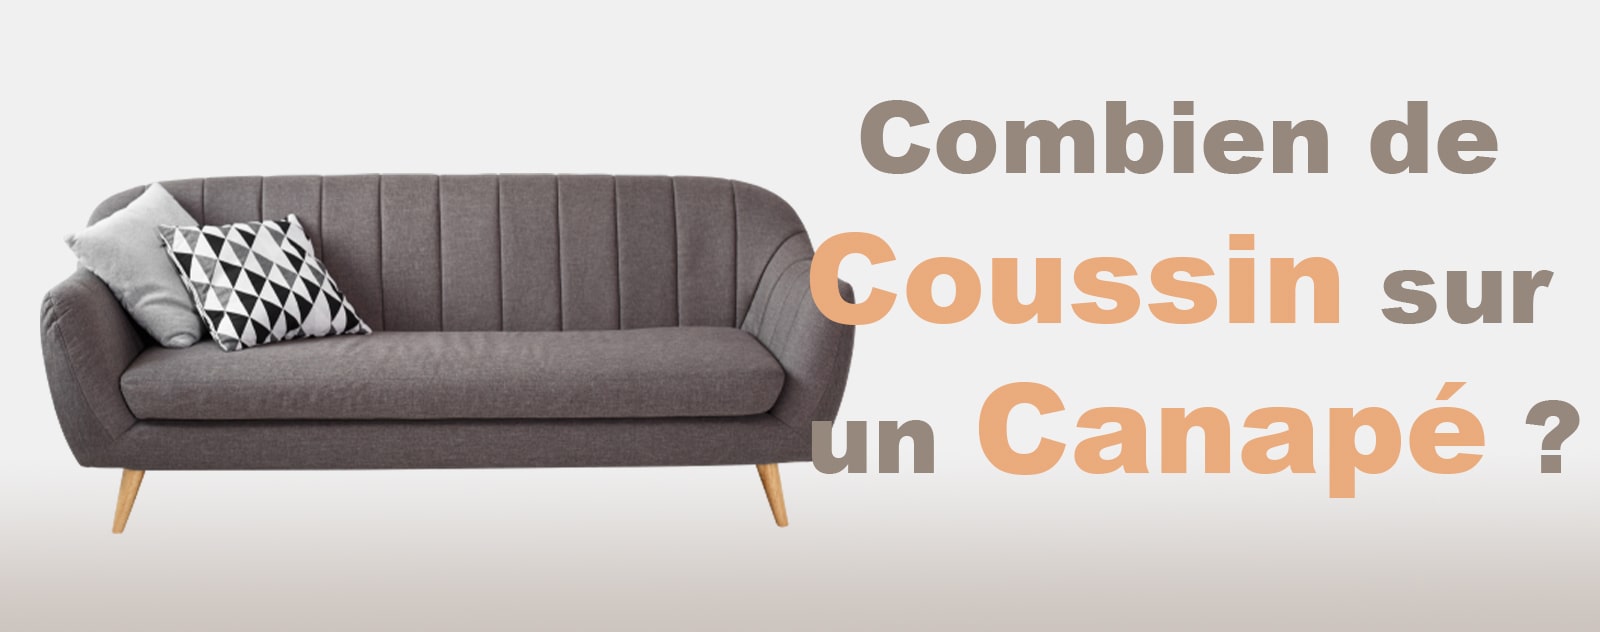 Combien de coussin mettre sur un canapé ?